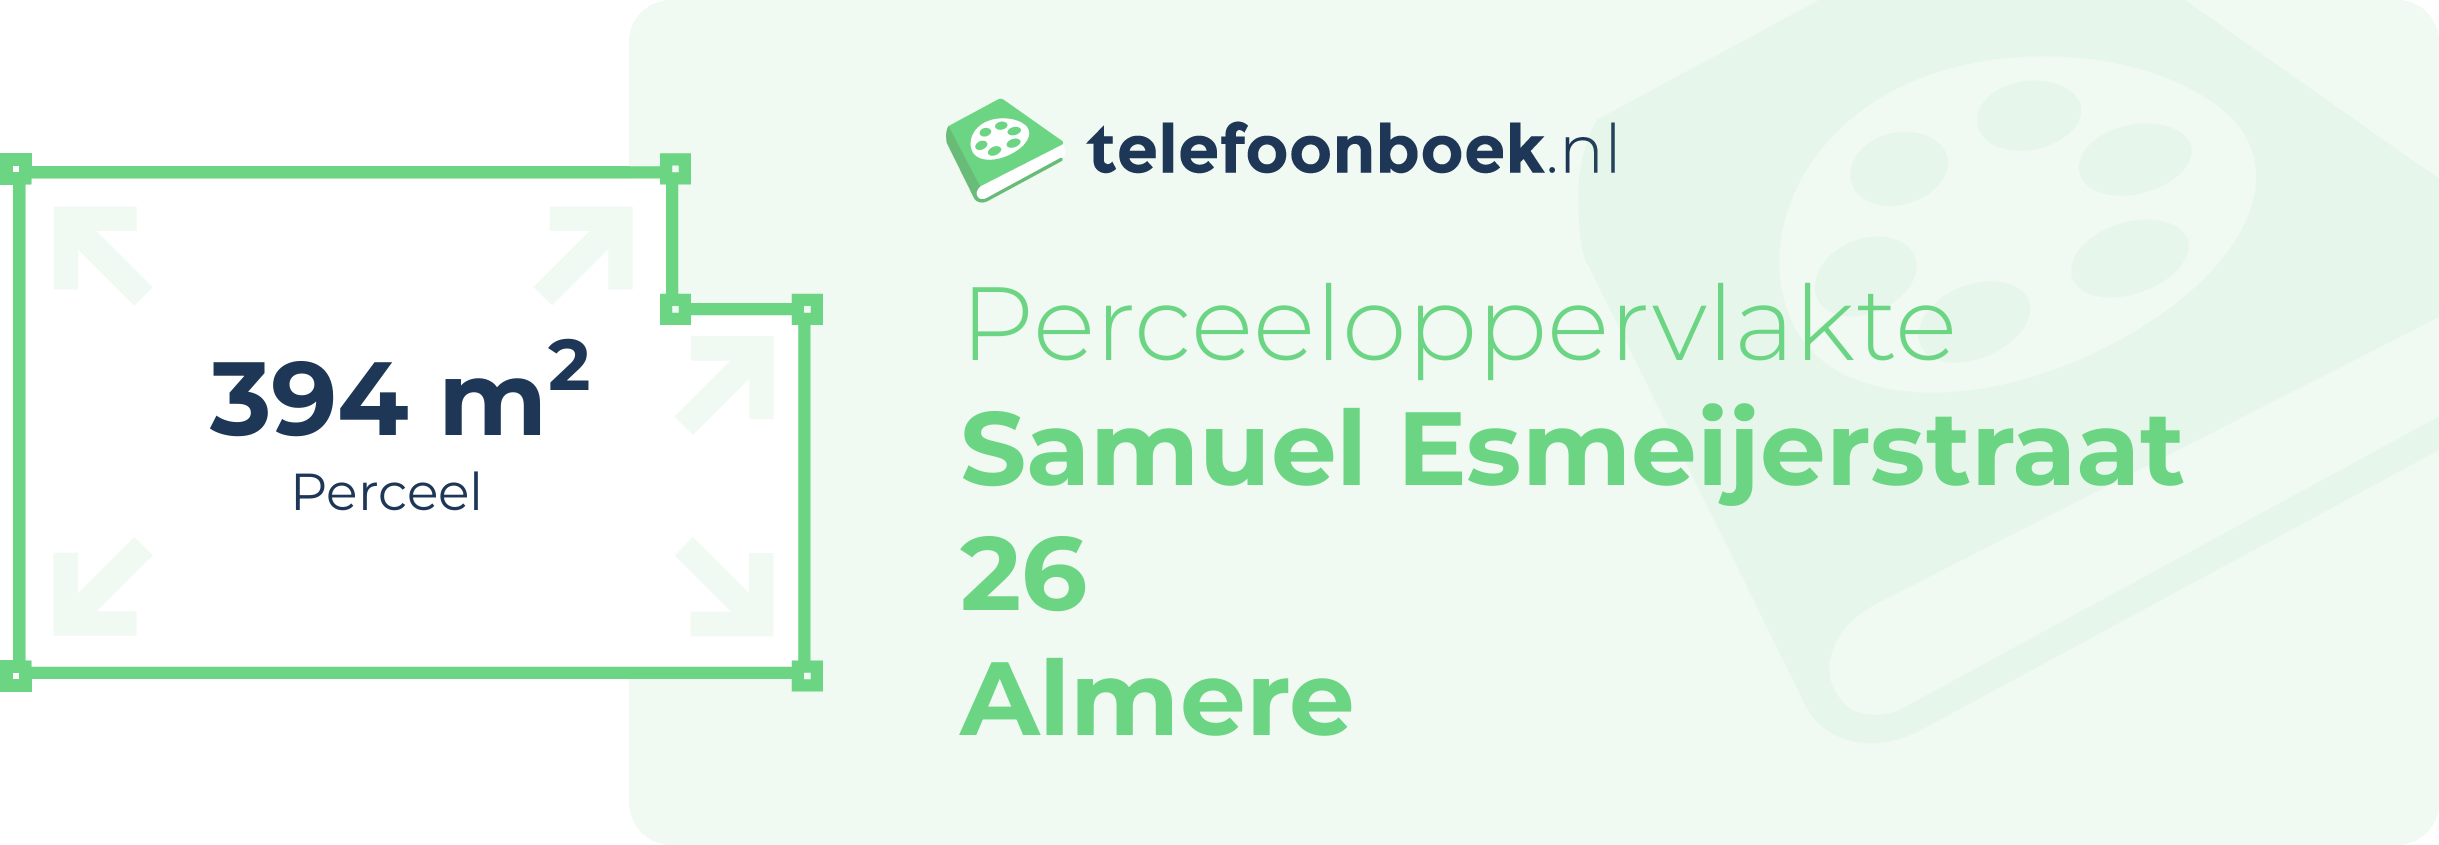 Perceeloppervlakte Samuel Esmeijerstraat 26 Almere